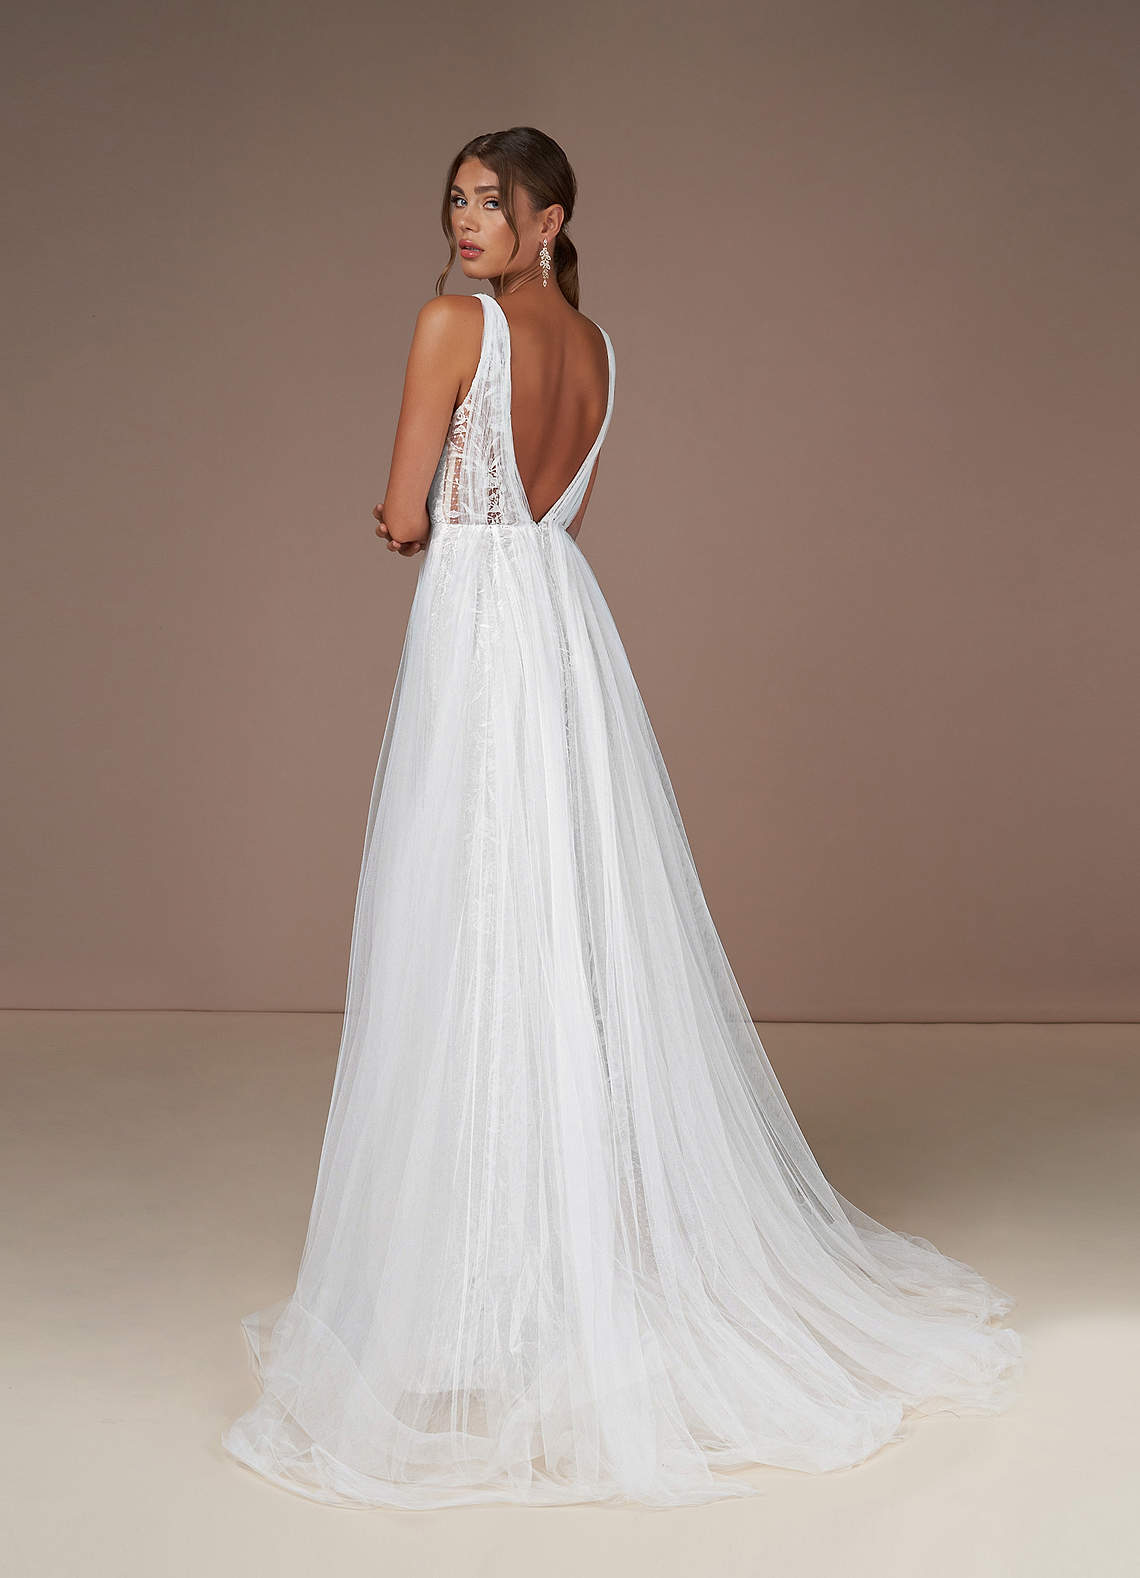 Platinum Wedding Dresses A-Line Sequins Tulle Chapel Train Dress image1